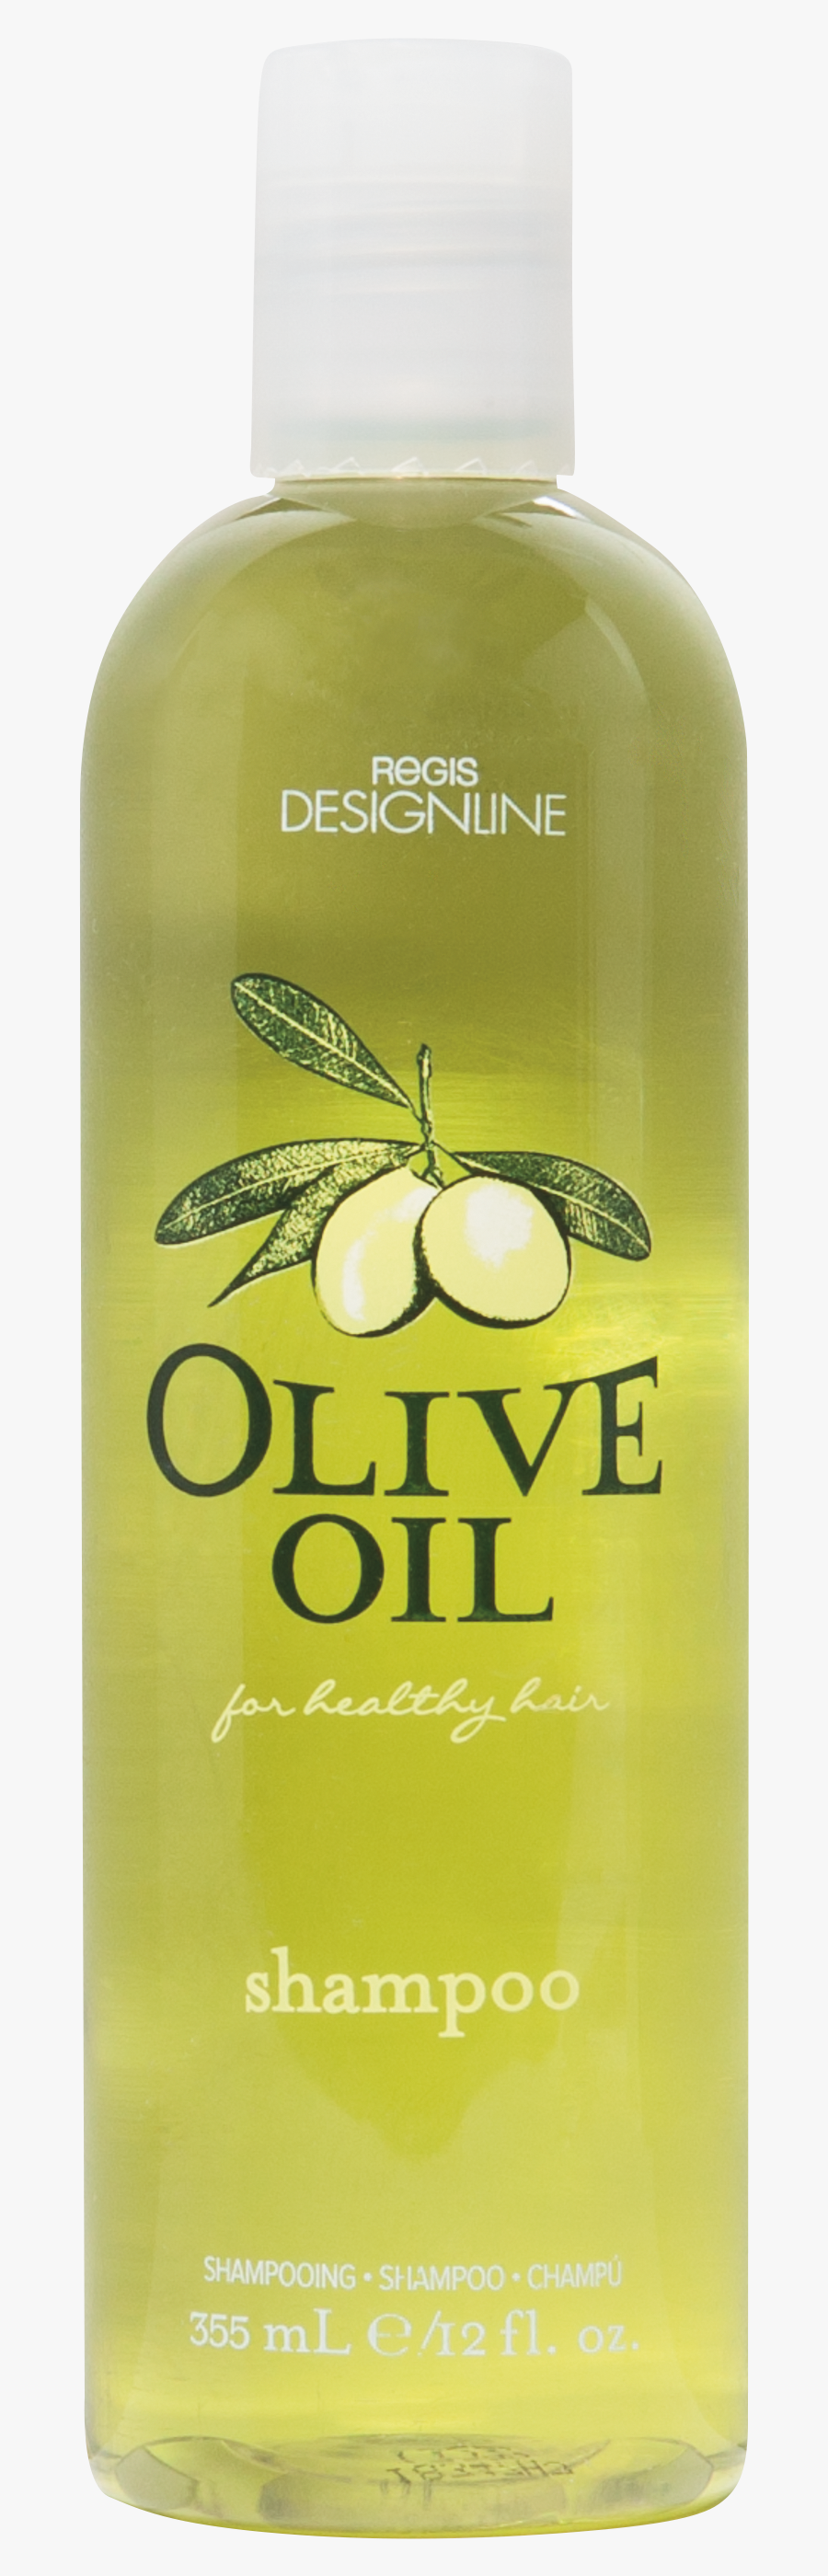 Clip Art Hair Product Supercuts Olive - Liquid Hand Soap, Transparent Clipart